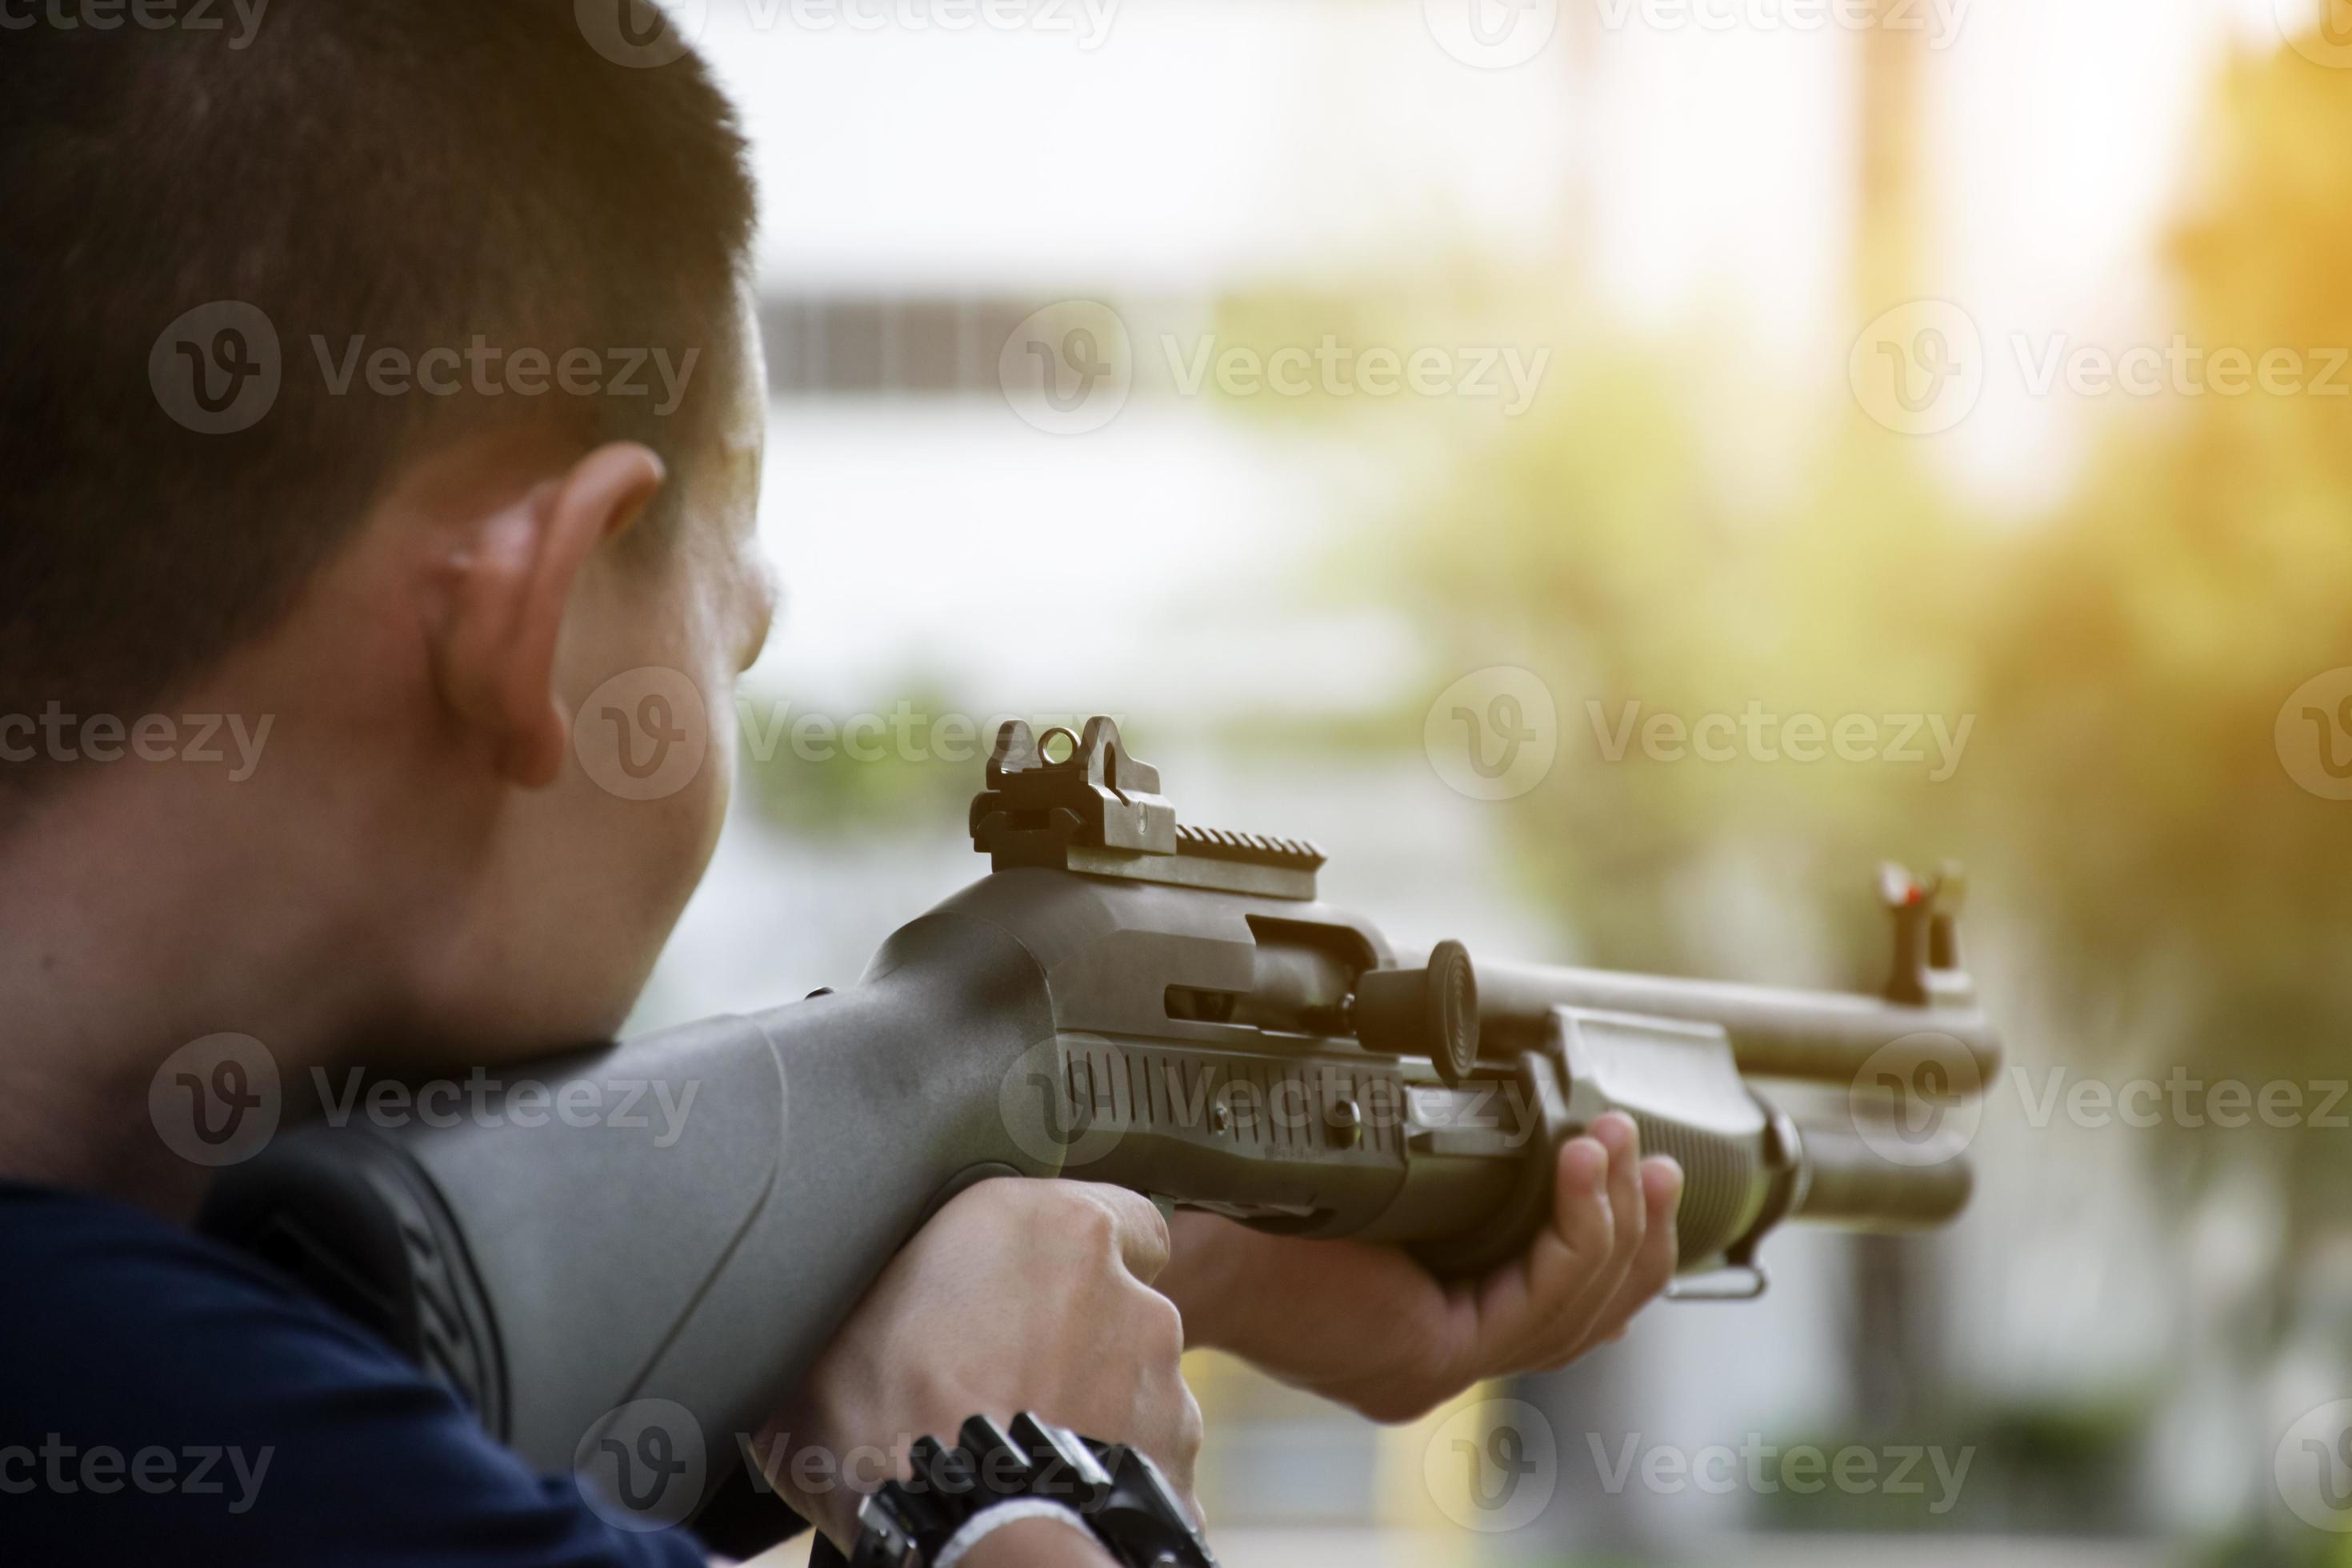 Sniper camuflado com arma de atirador nas mãos